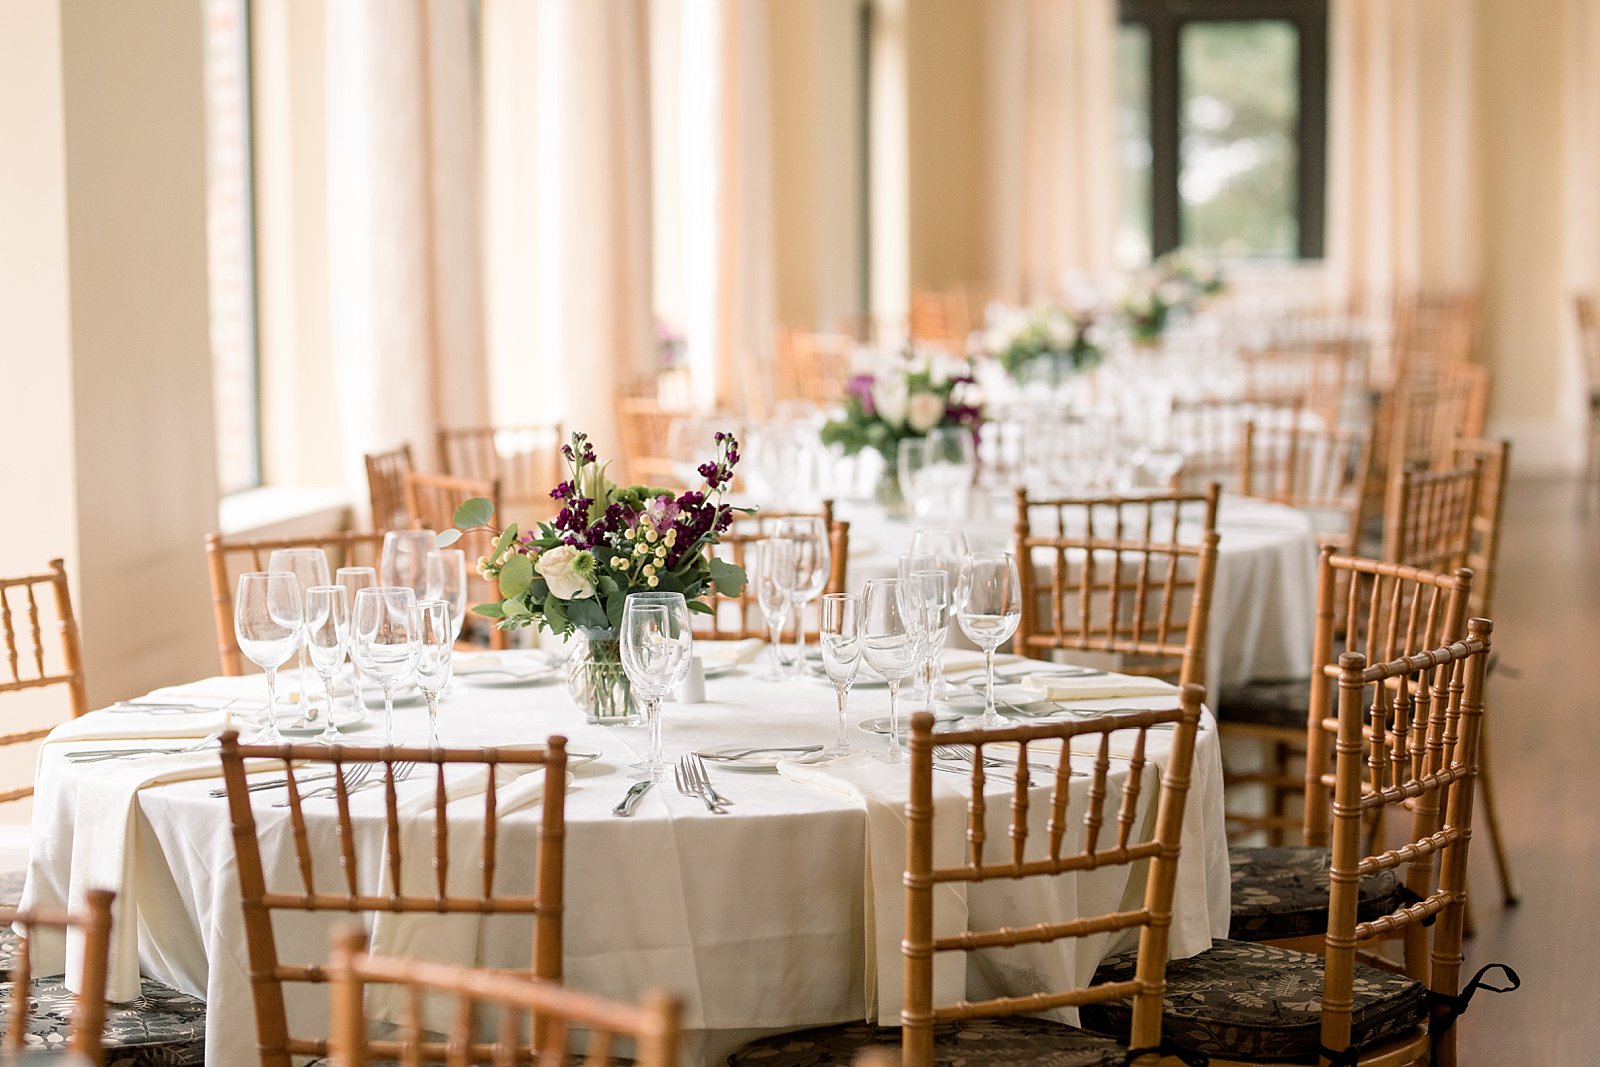 Aldie Mansion wedding reception with purple floral centerpieces 